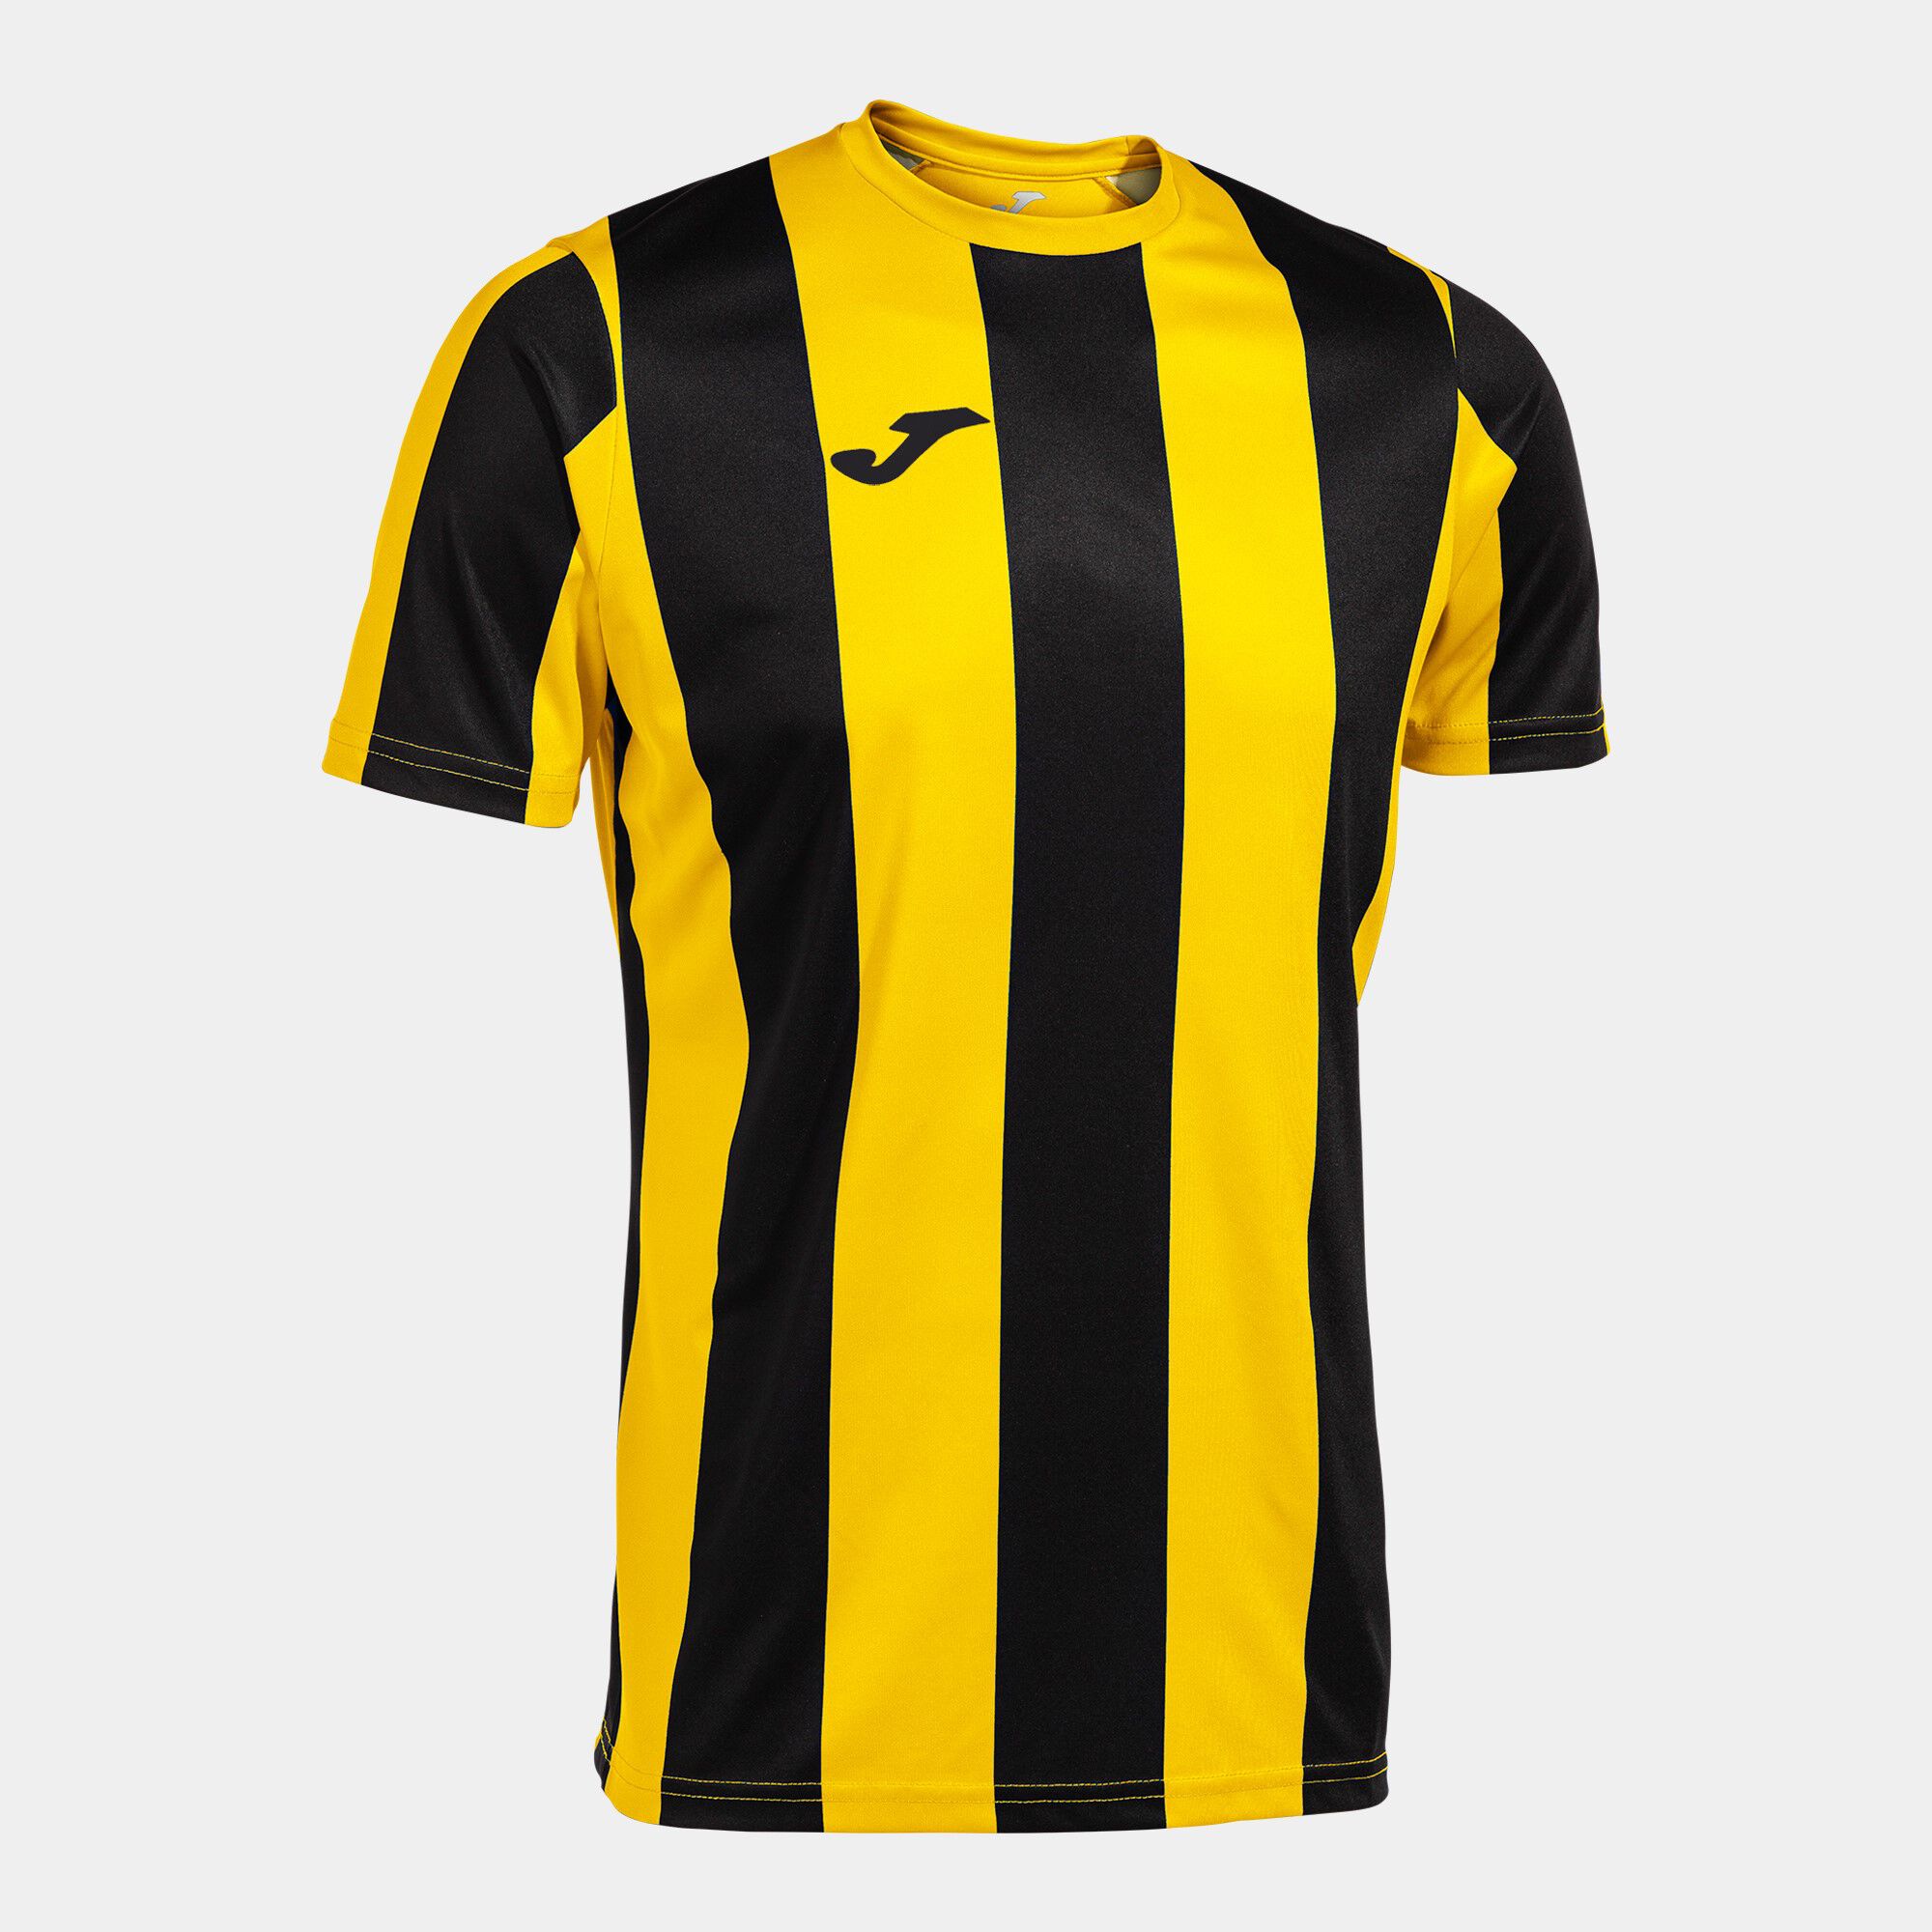 Camiseta manga corta hombre Inter Classic amarillo negro